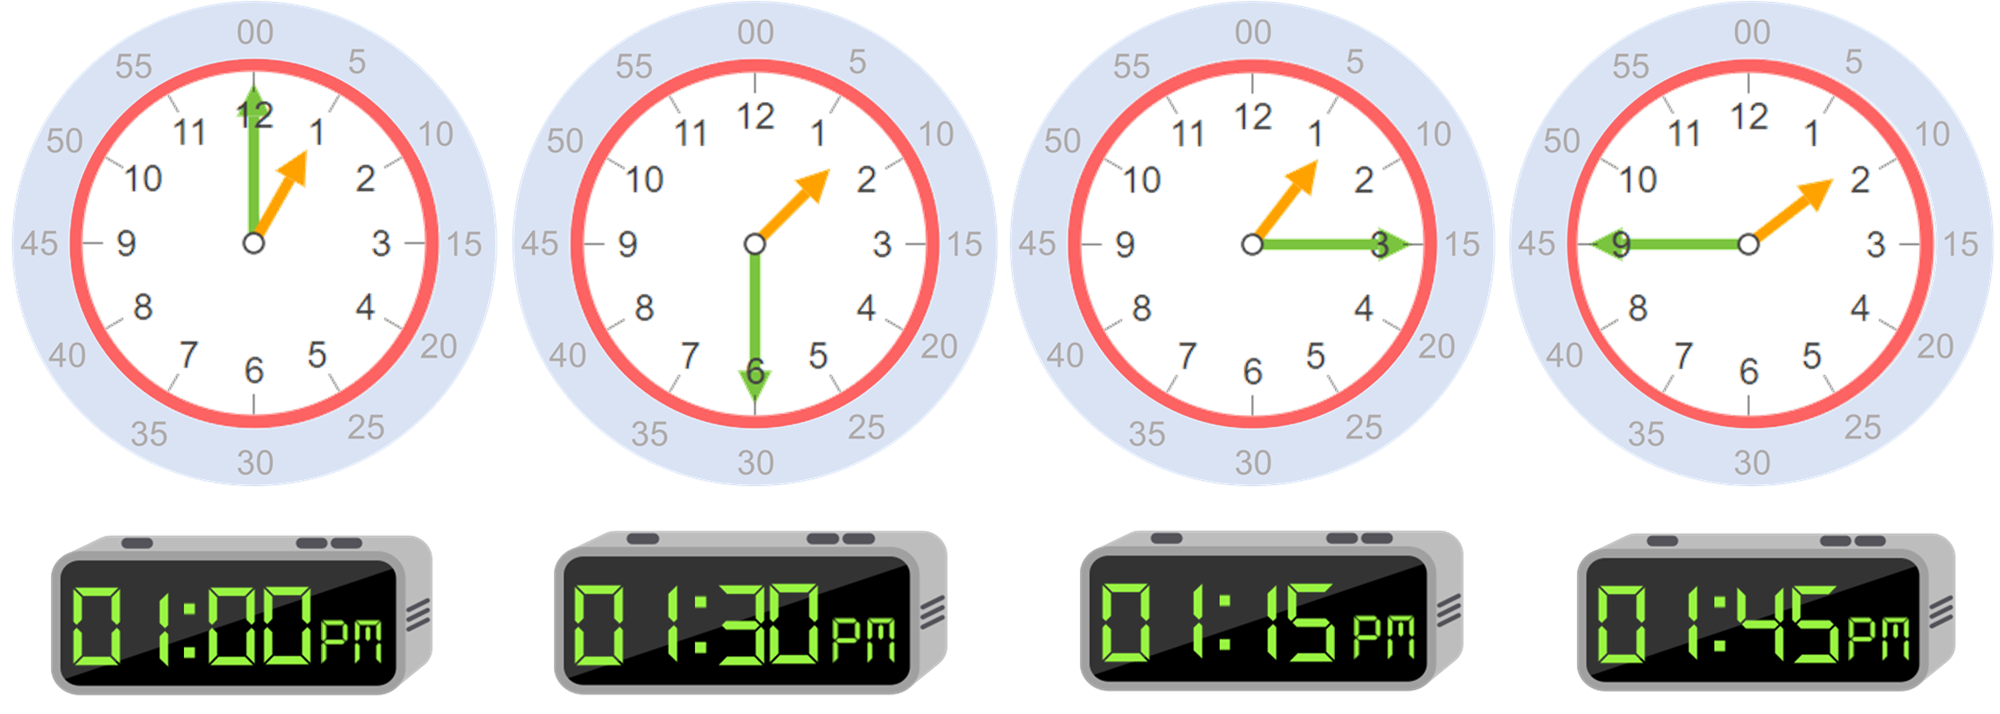 Horas: básicos para aprender a leer hora en un reloj - Smartick